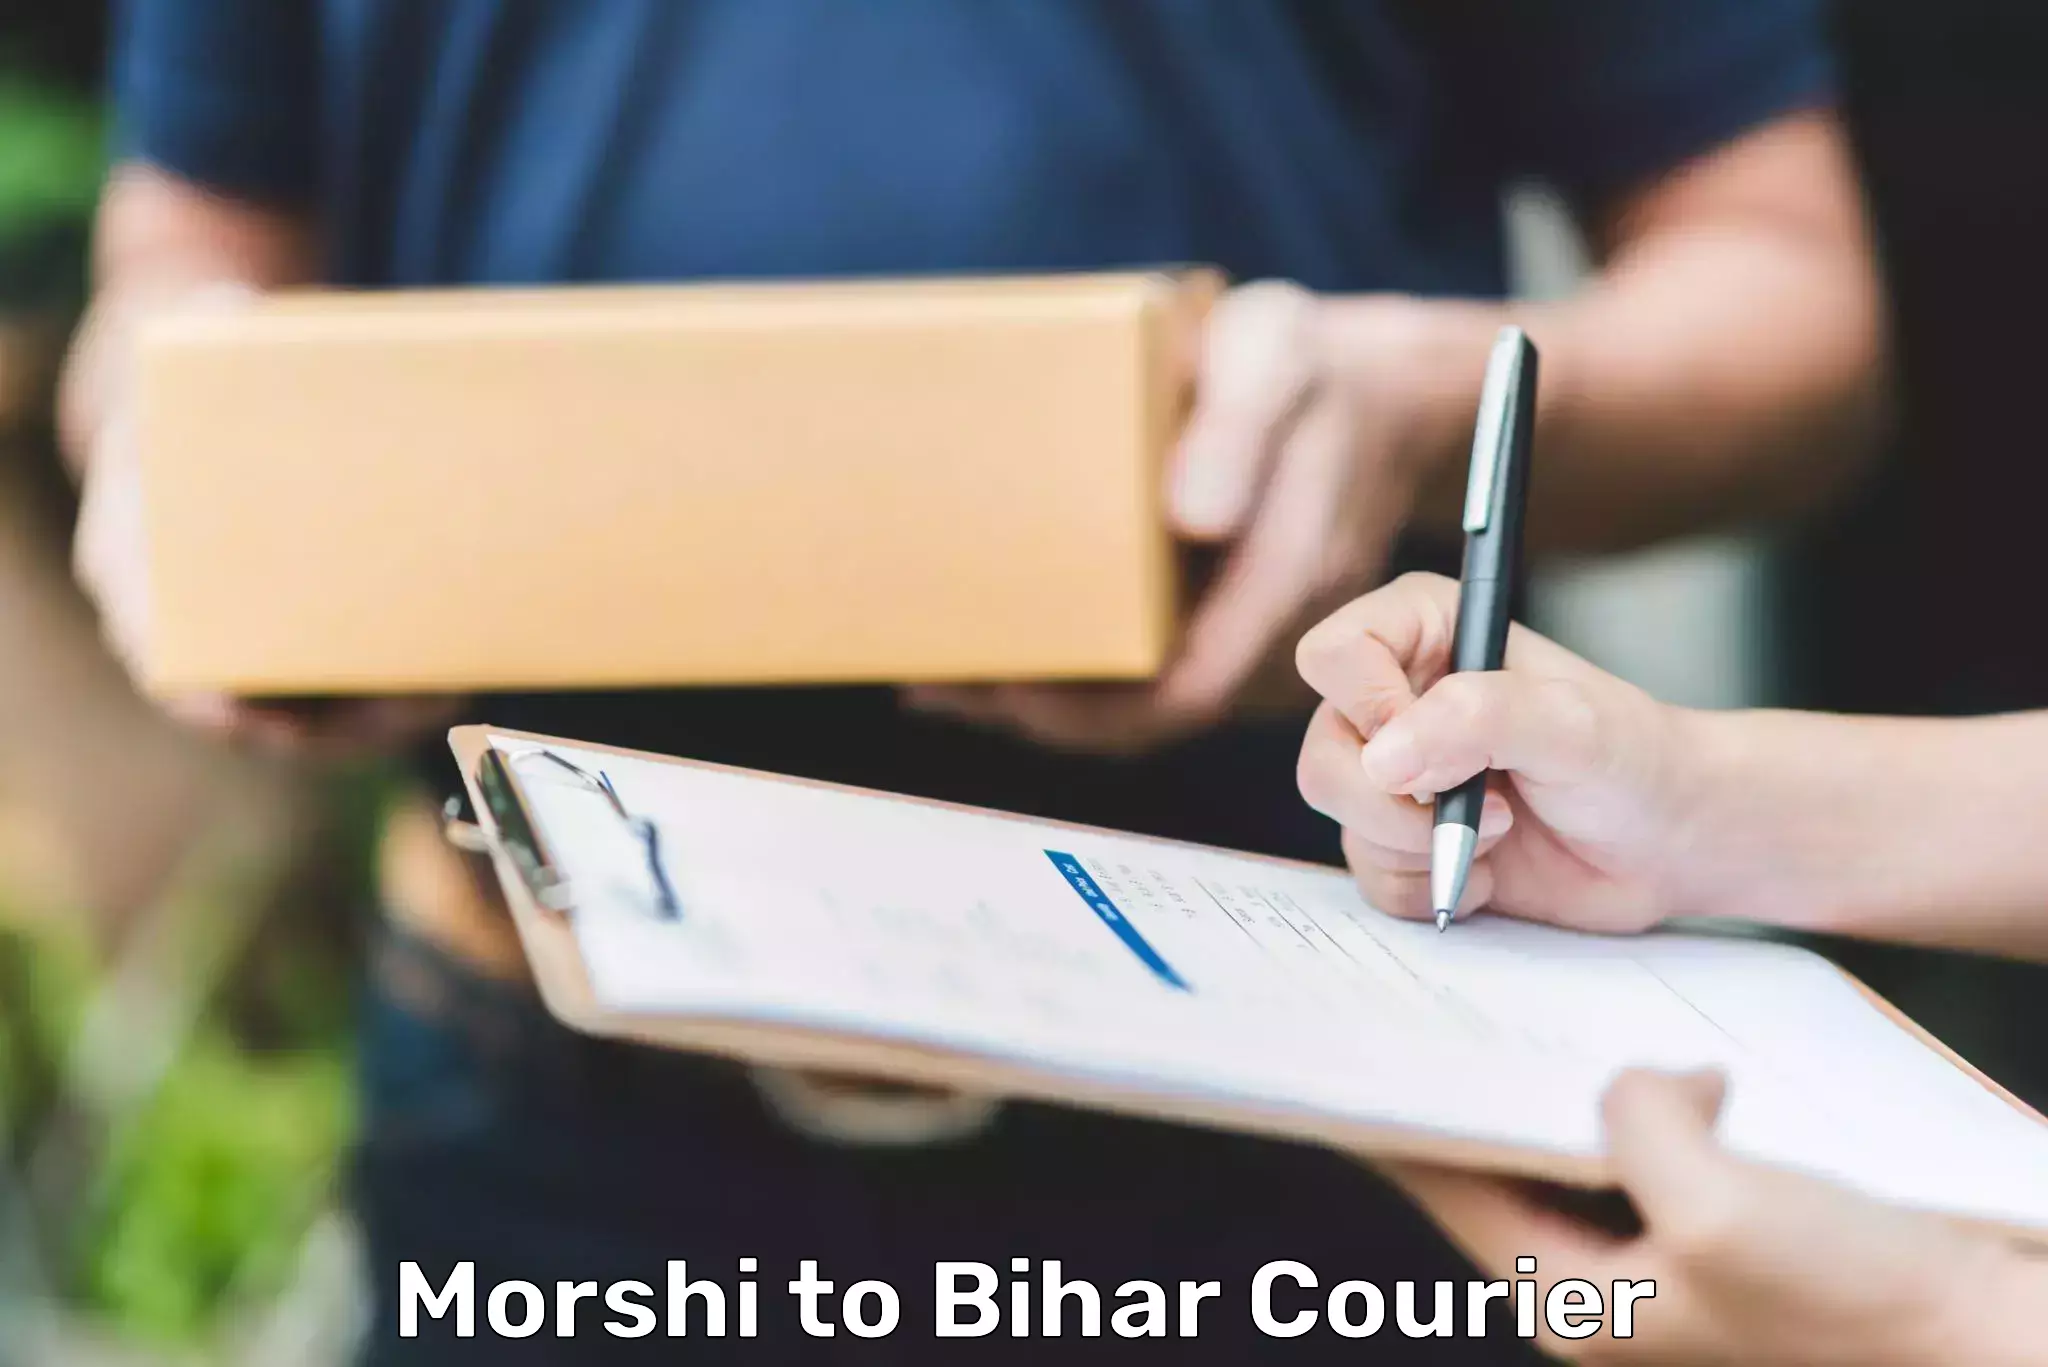 Reliable delivery network Morshi to Maranga